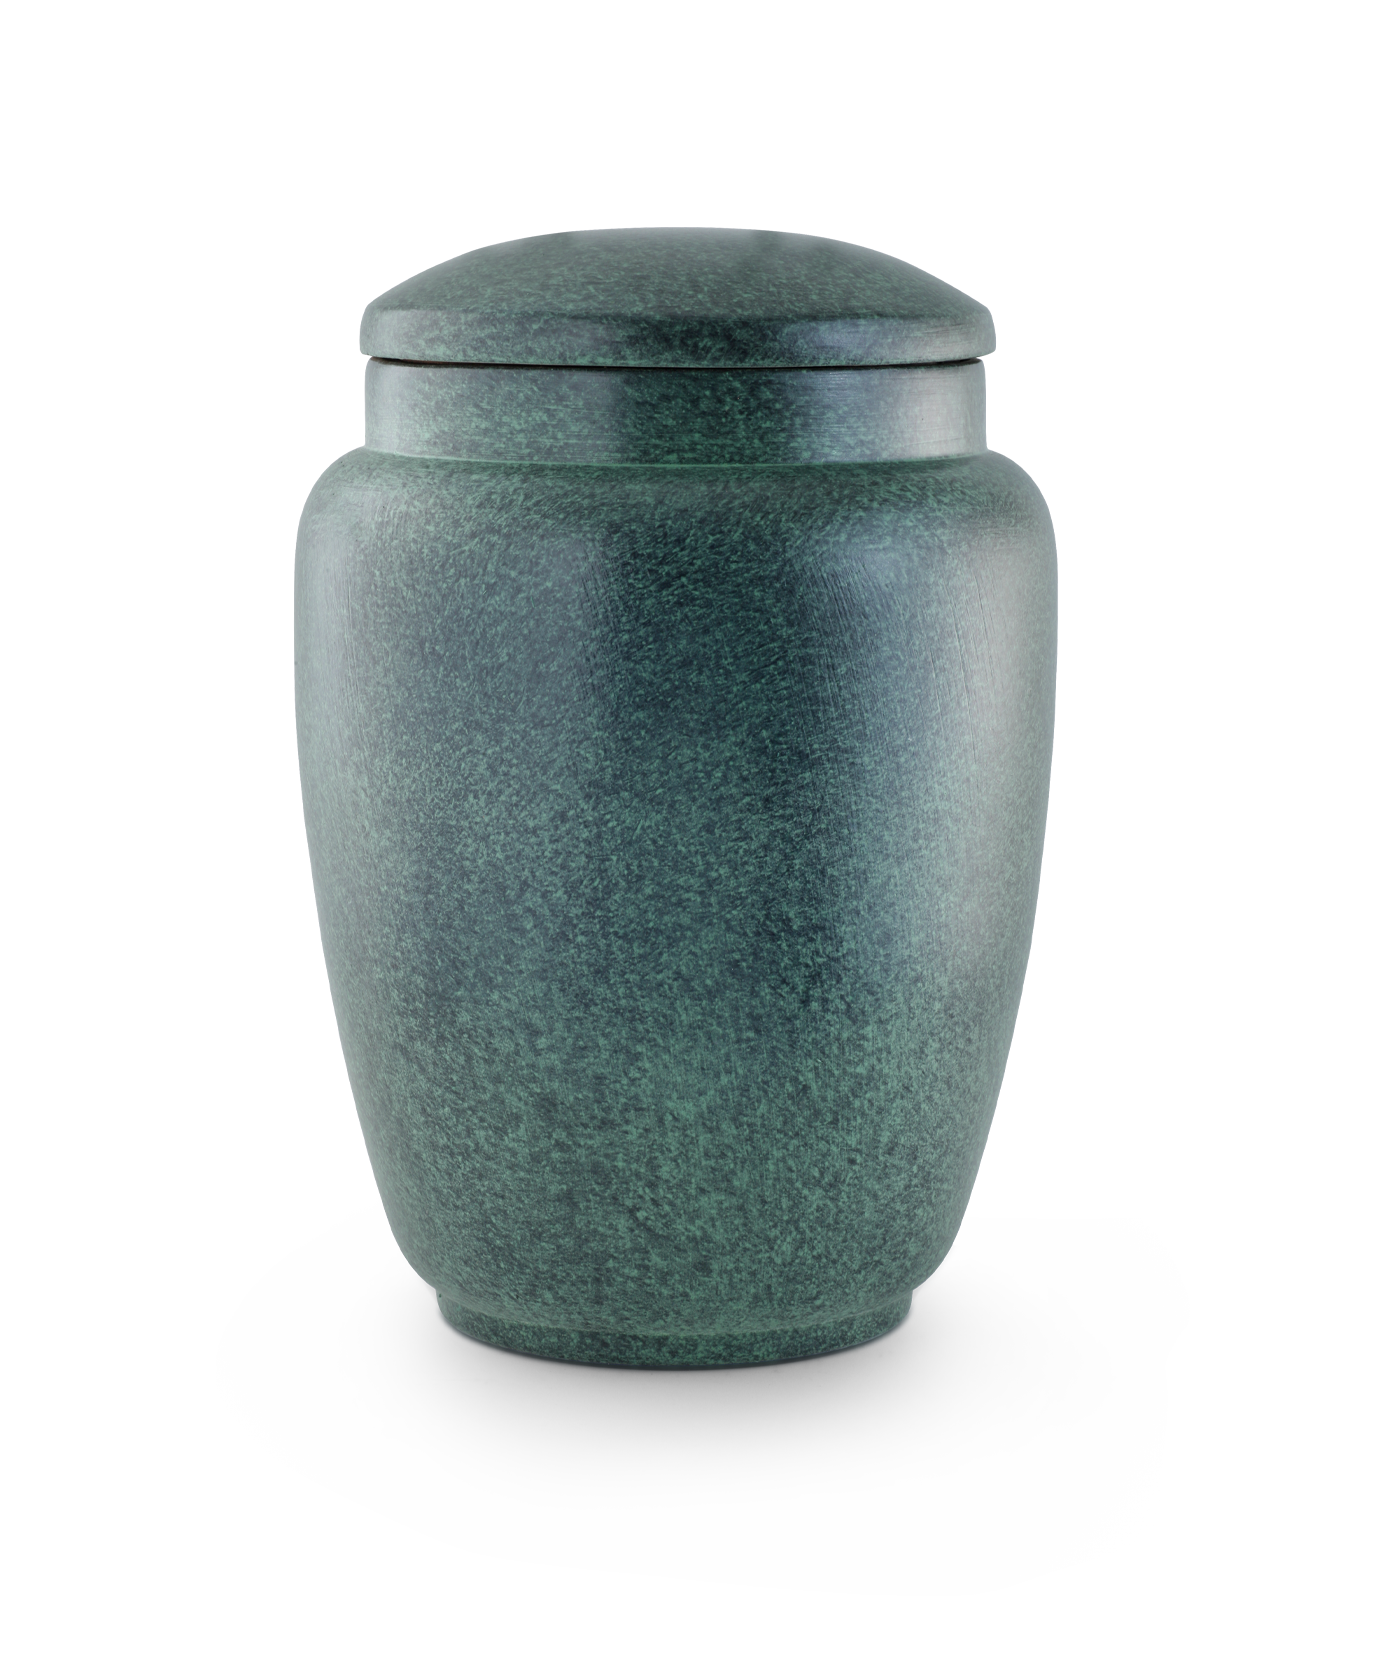 Völsing urn hand-patinated ceramic